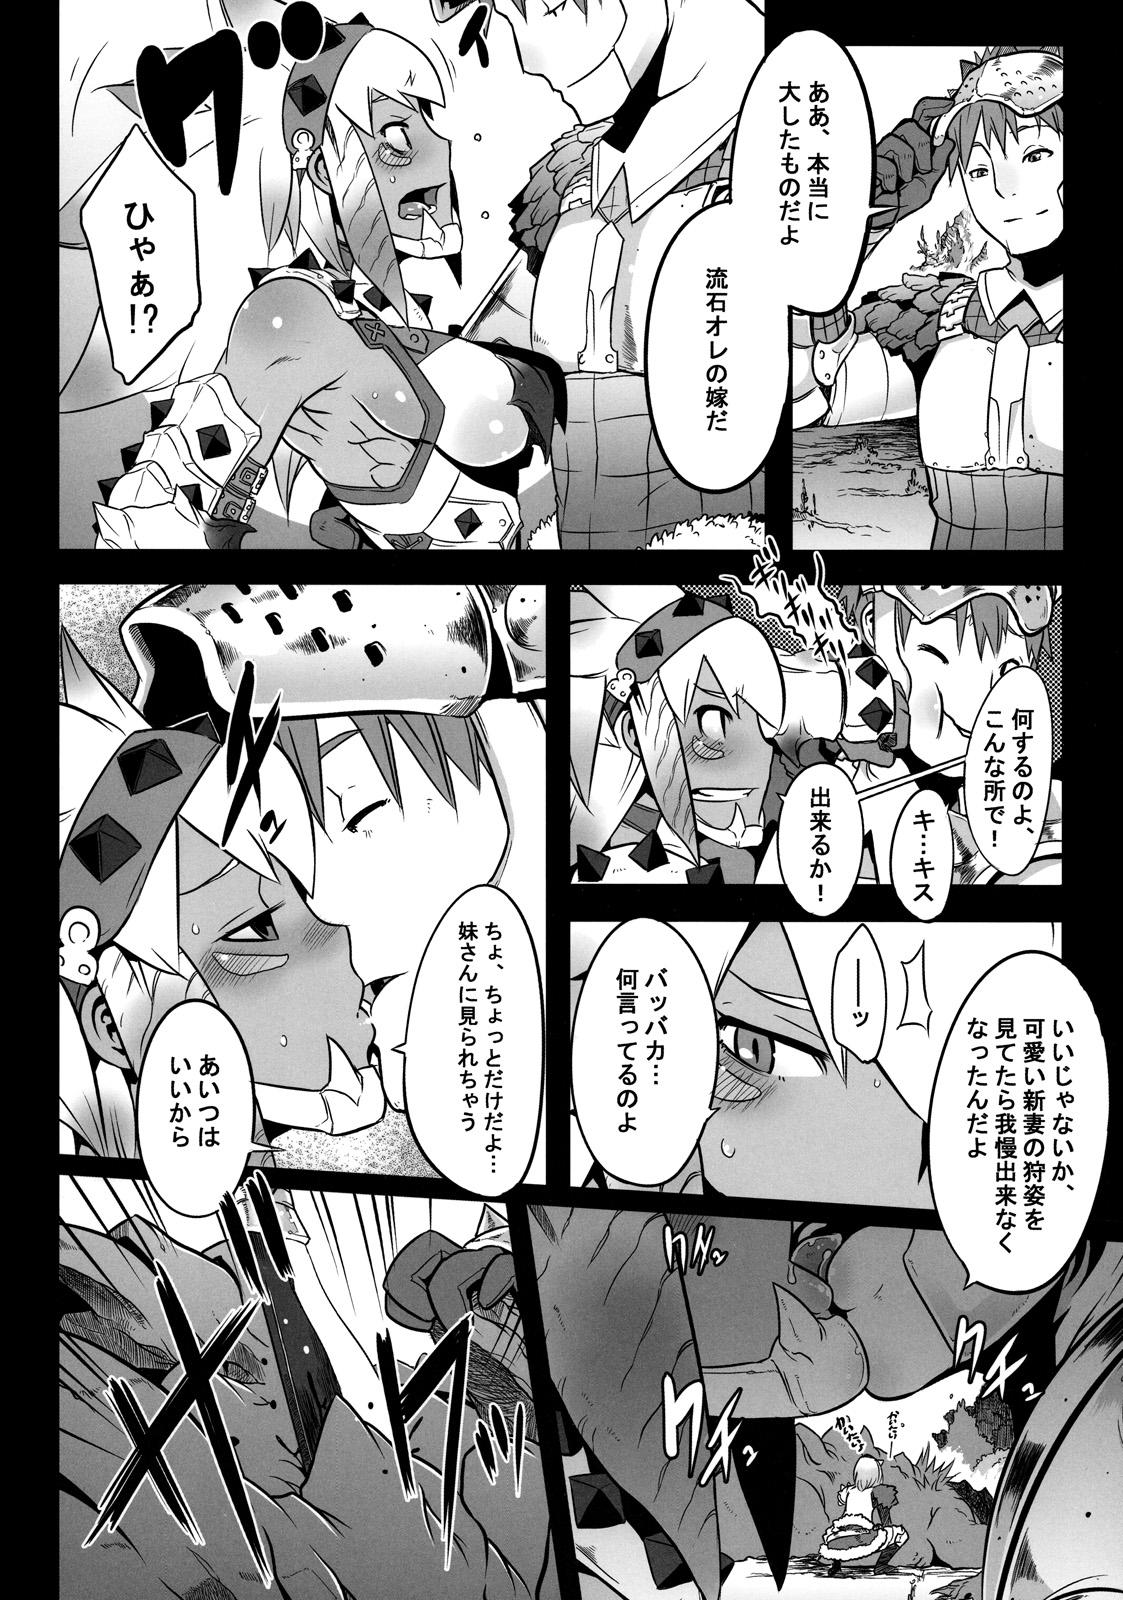 Speculum Hanshoku Nebura - Monster hunter Maid - Page 4